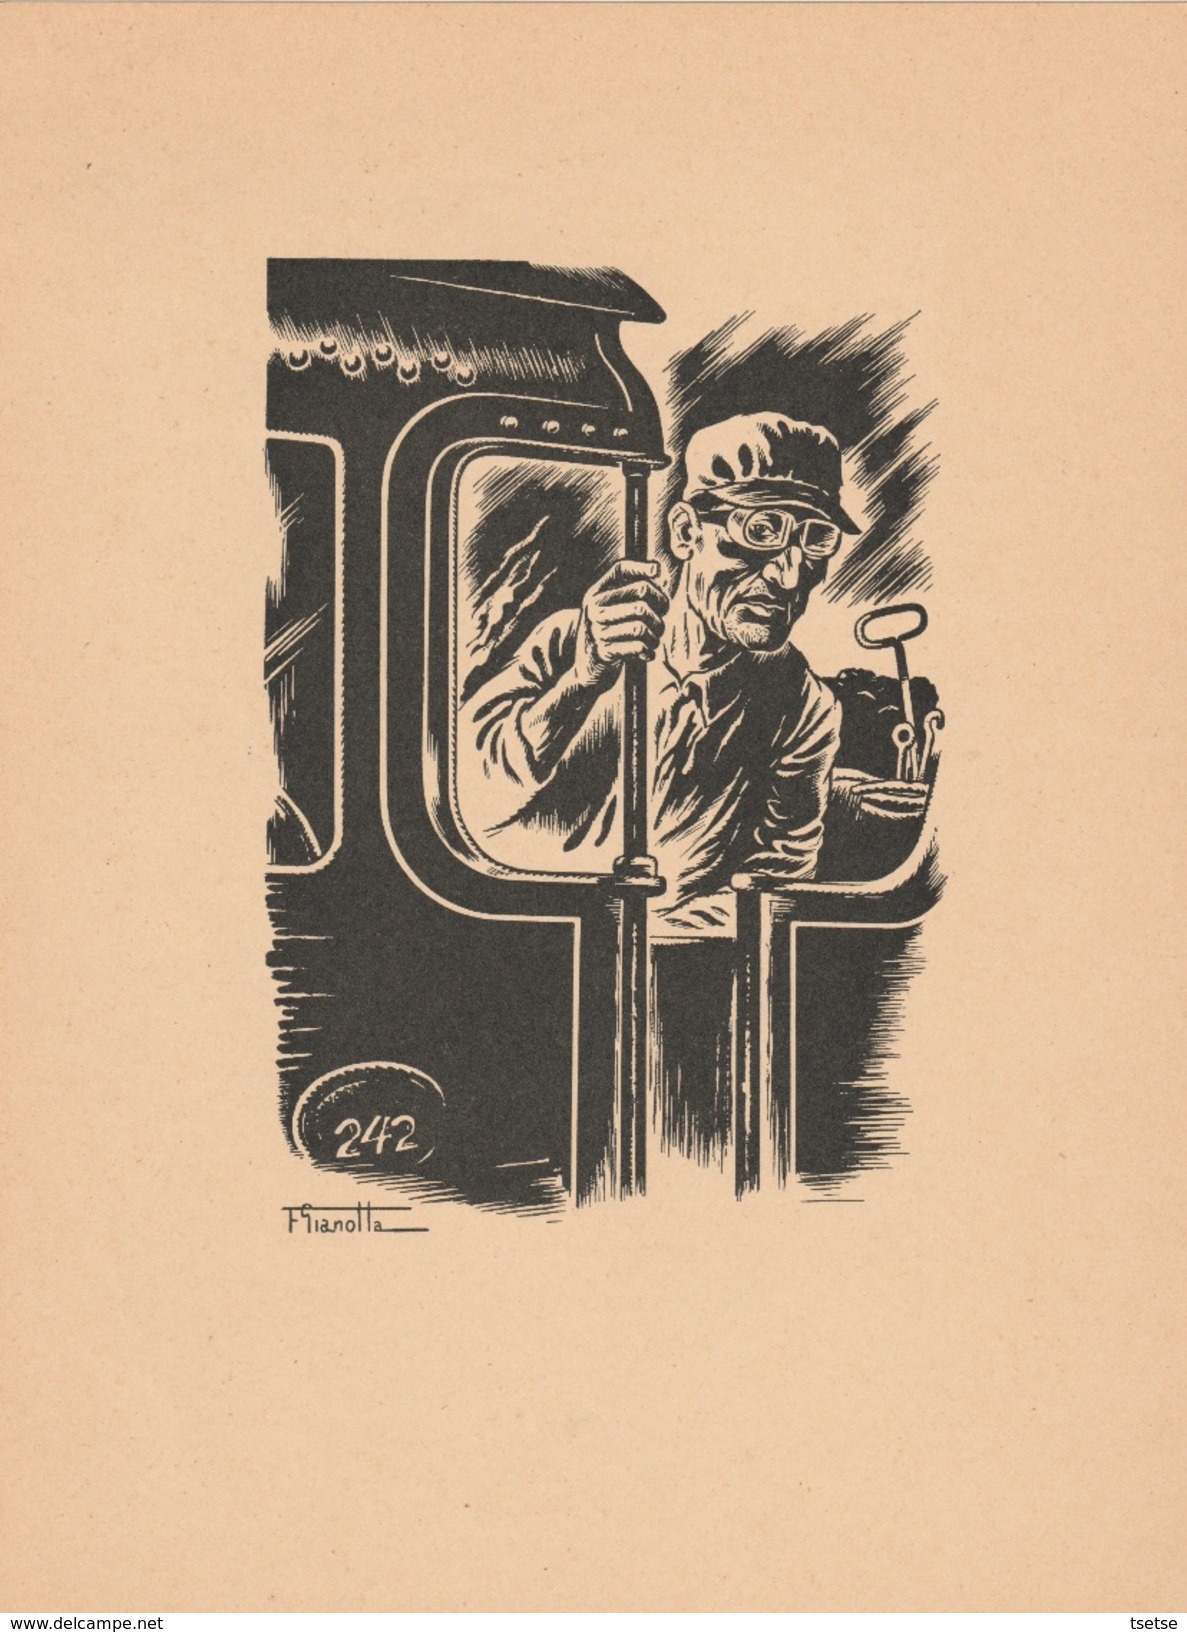 Série de 6 dessins de François Gianolla dans la farde originale , illustrant le Pays Noir/ La Mine , les Mineurs